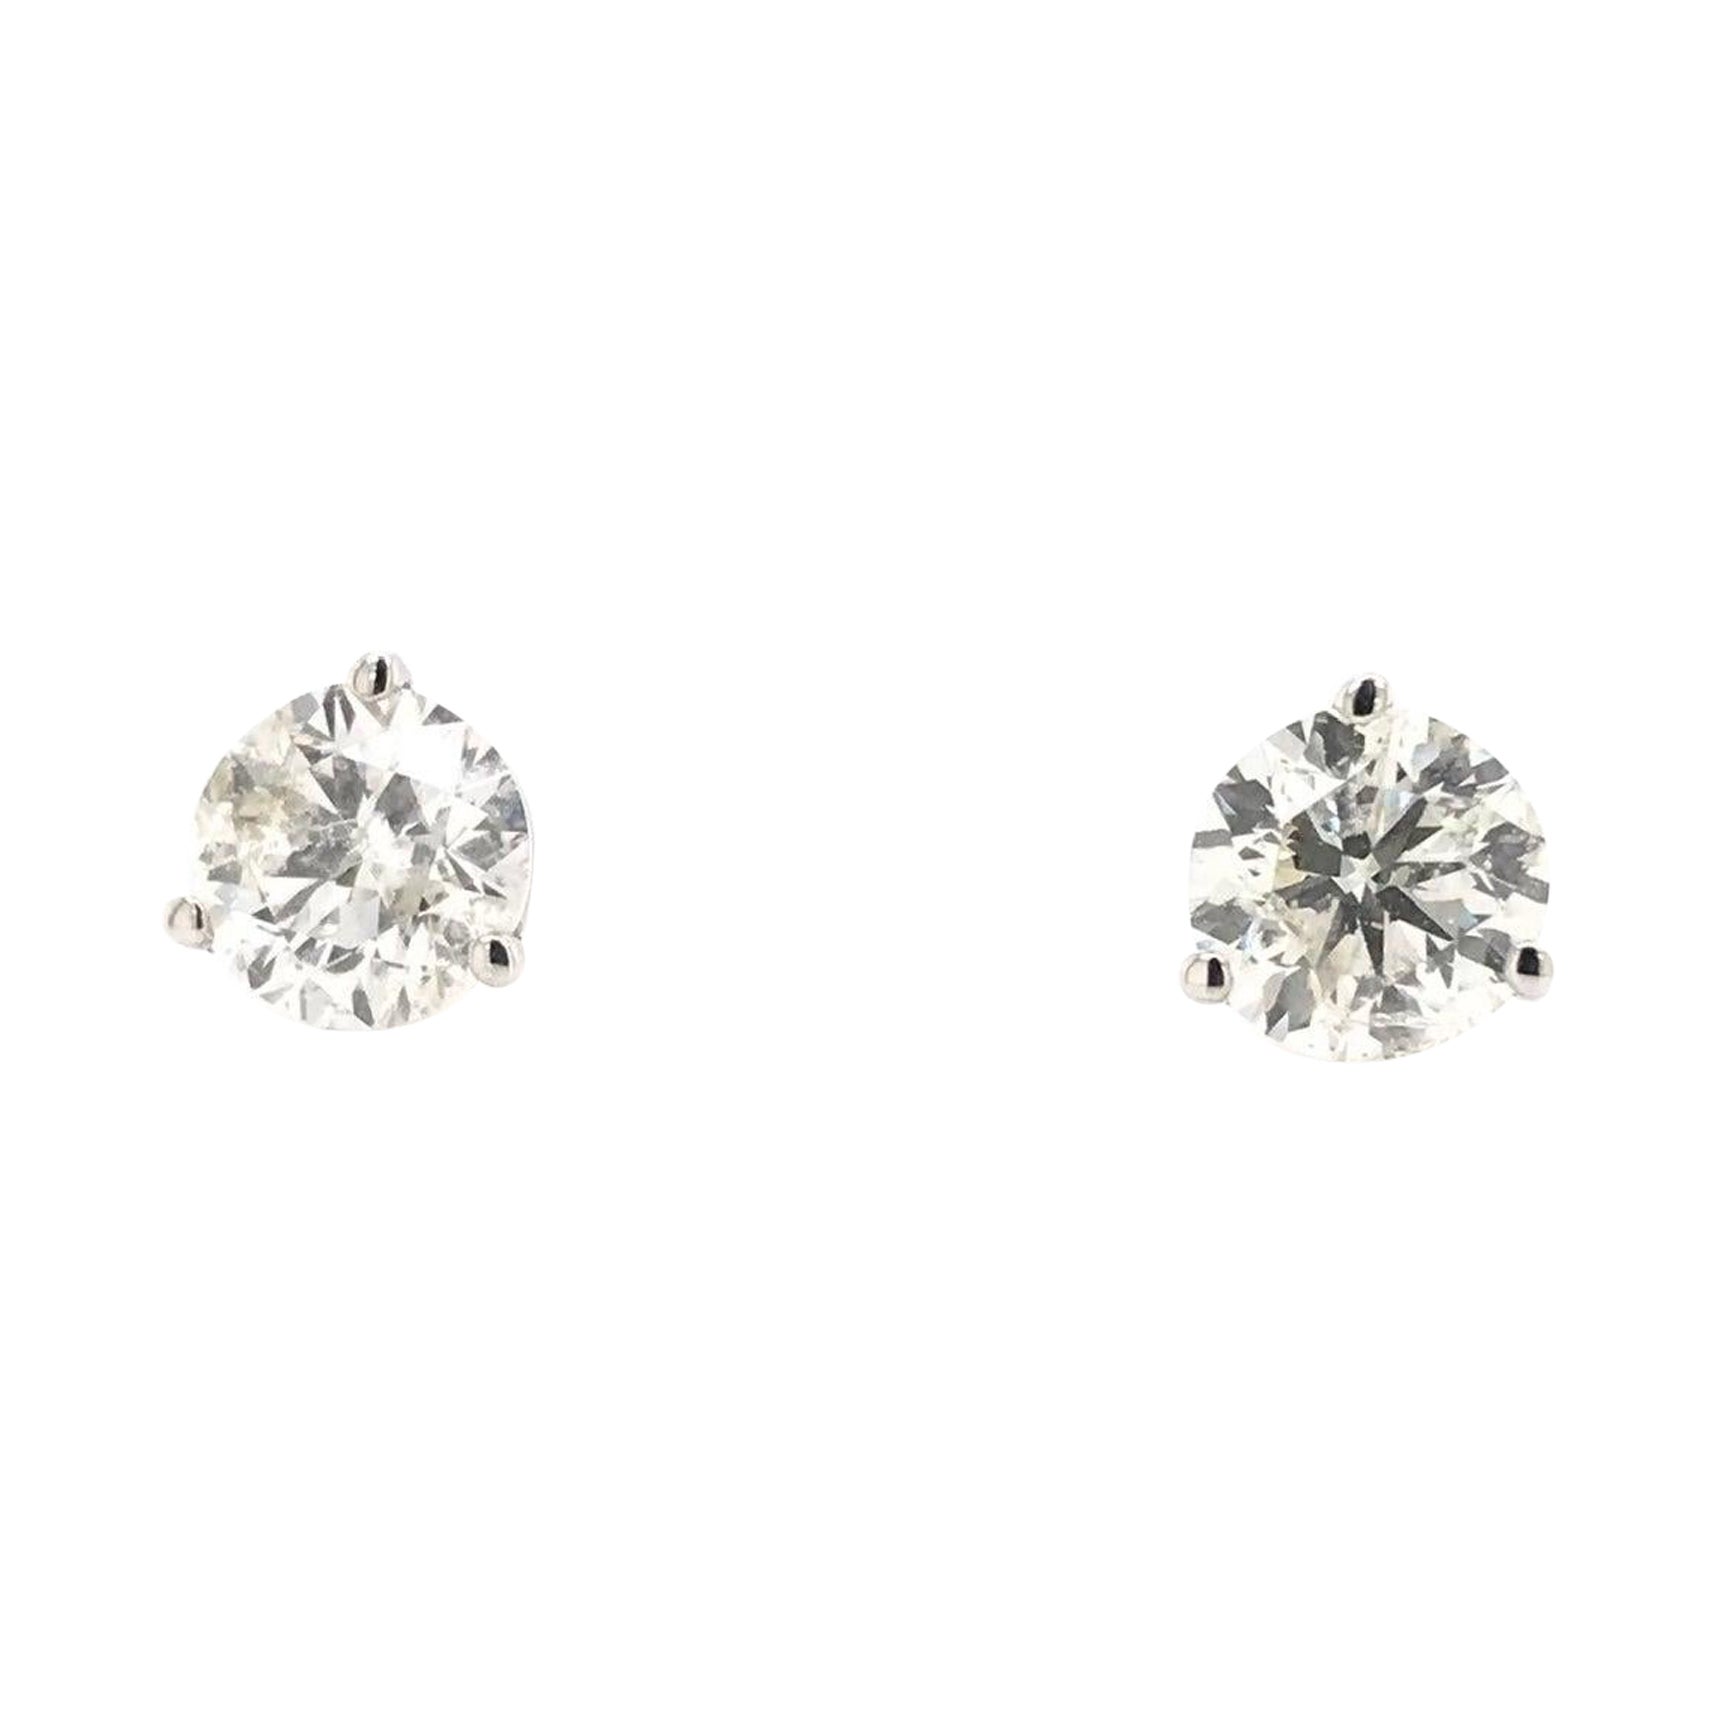 1 & 1/2 Carat DTW Diamond Stud Earrings